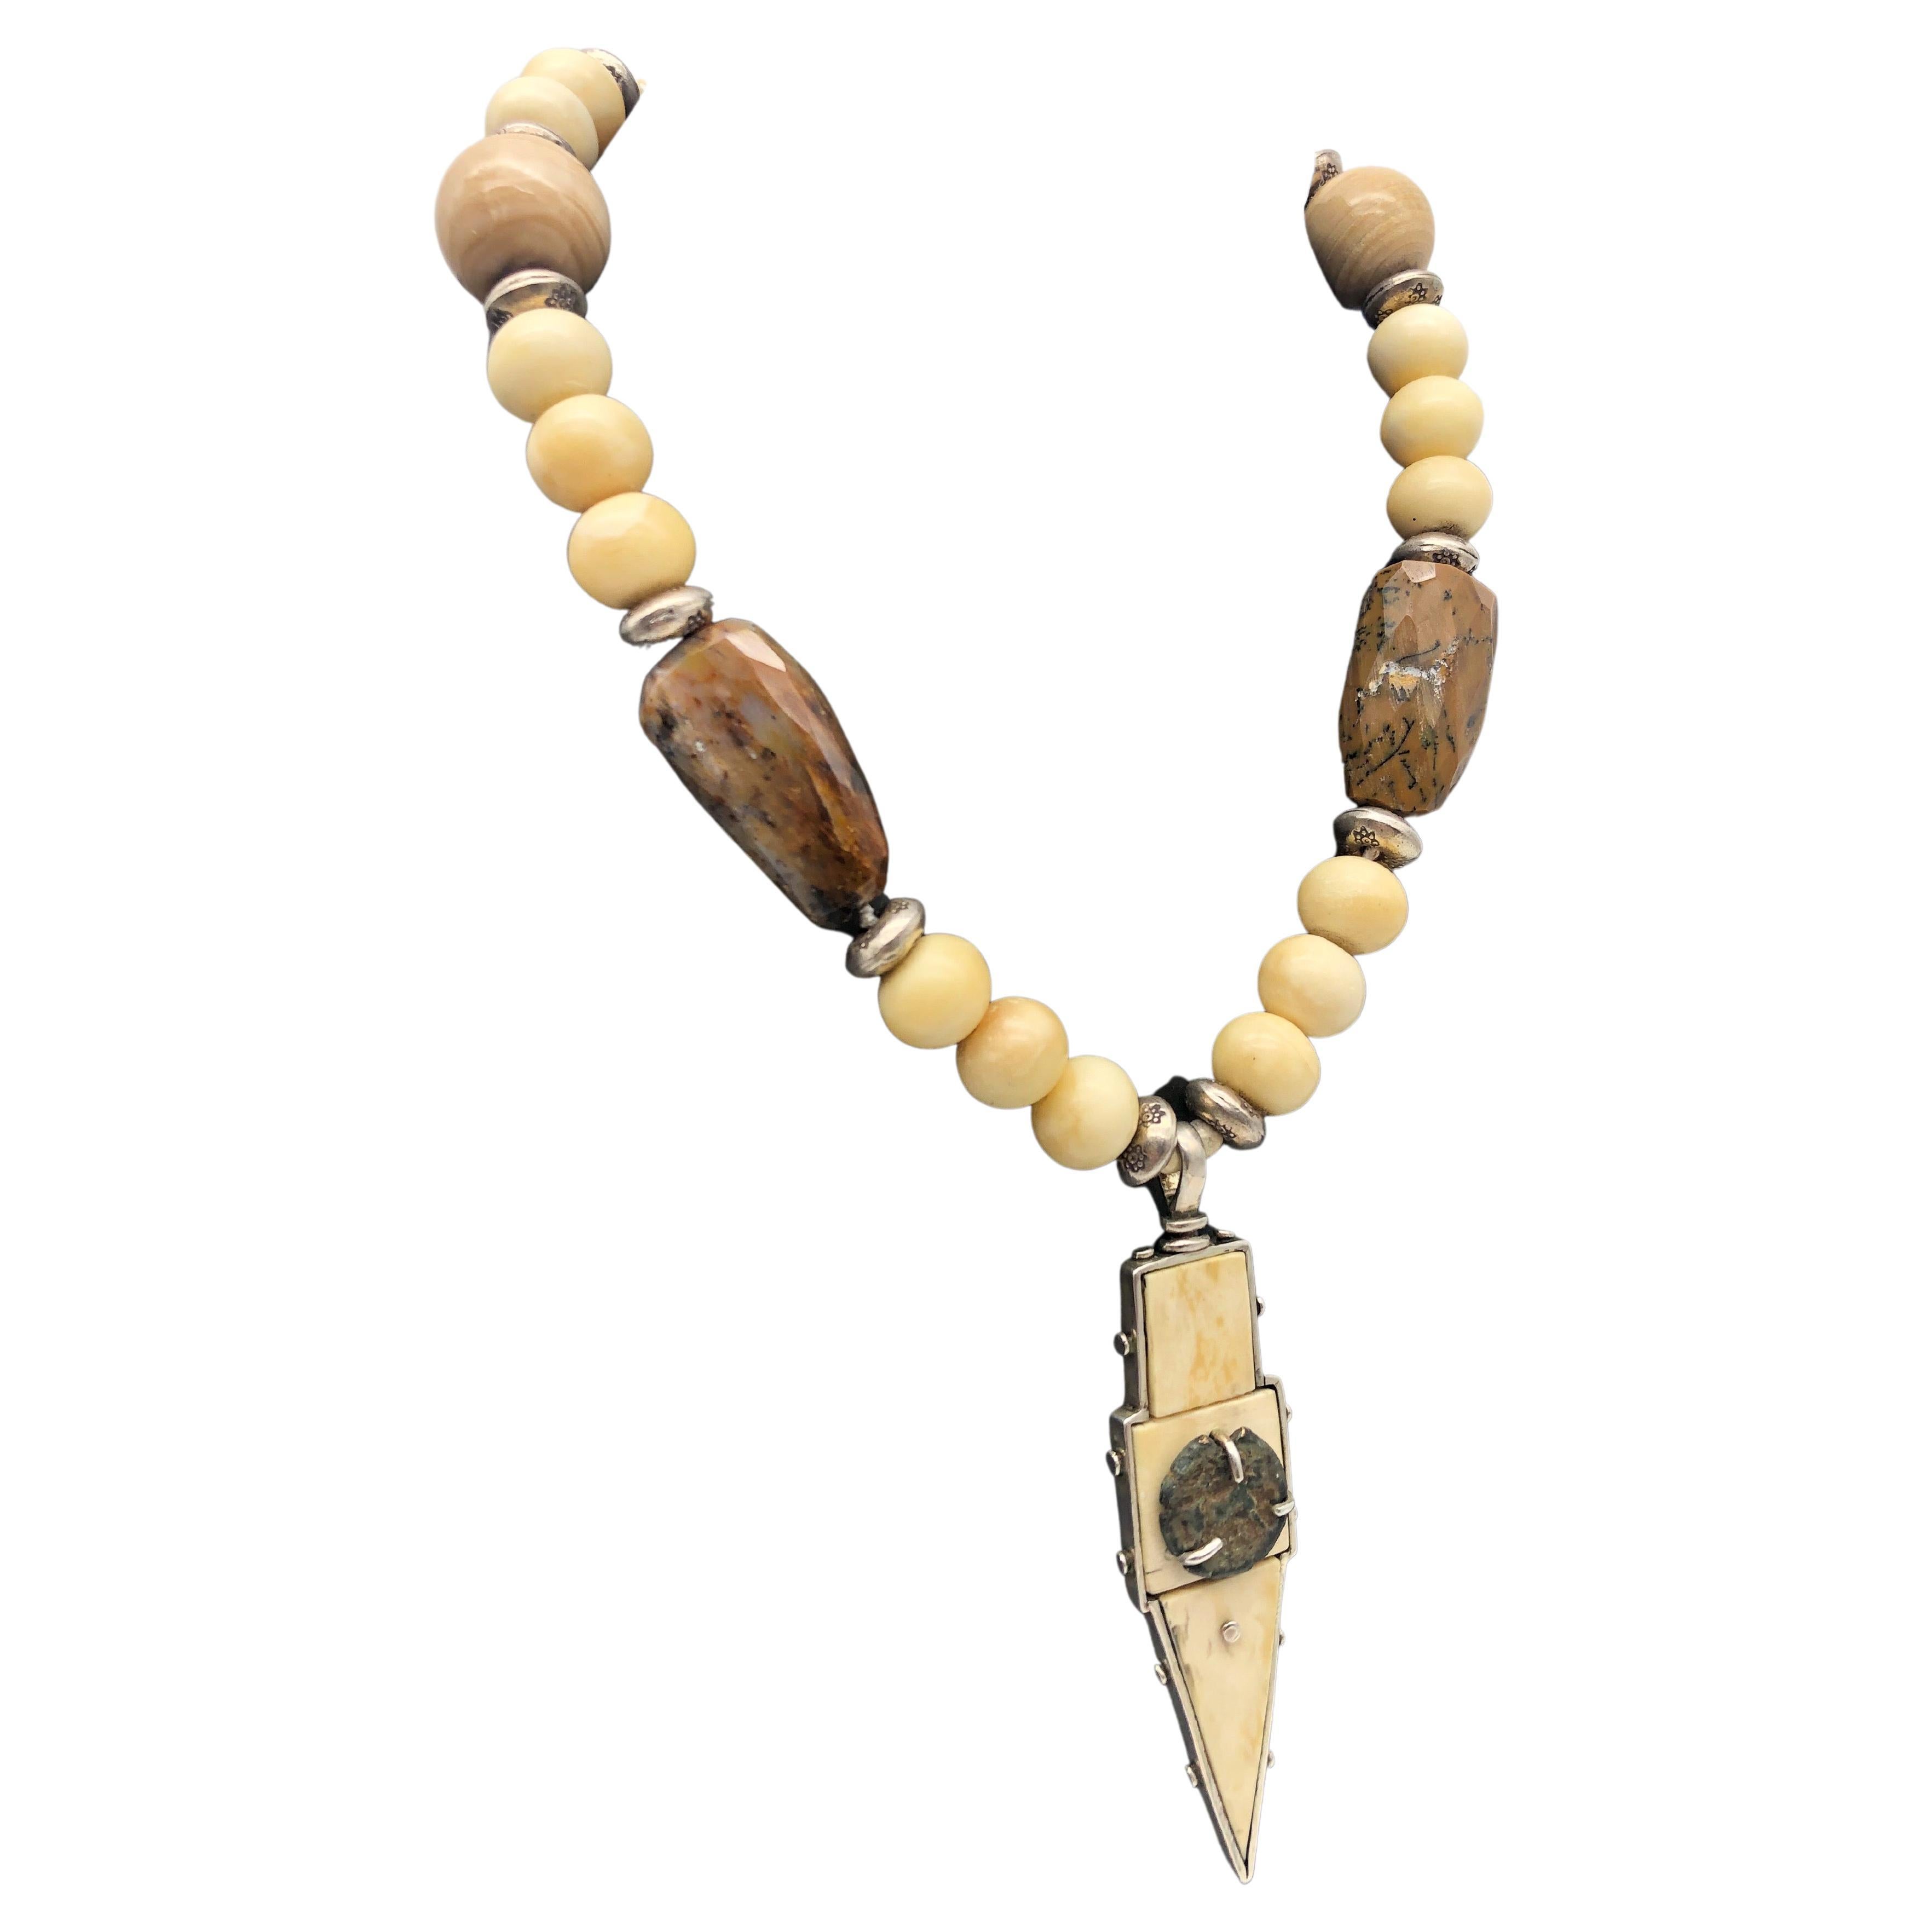 Unique en son genre

Le pendentif est un mélange d'argent sterling, d'os de morse préhistorique et d'une ancienne pièce de monnaie romaine. Il est accompagné d'un collier coordonné aux couleurs douces et monochromes de jaspe poli et de perles